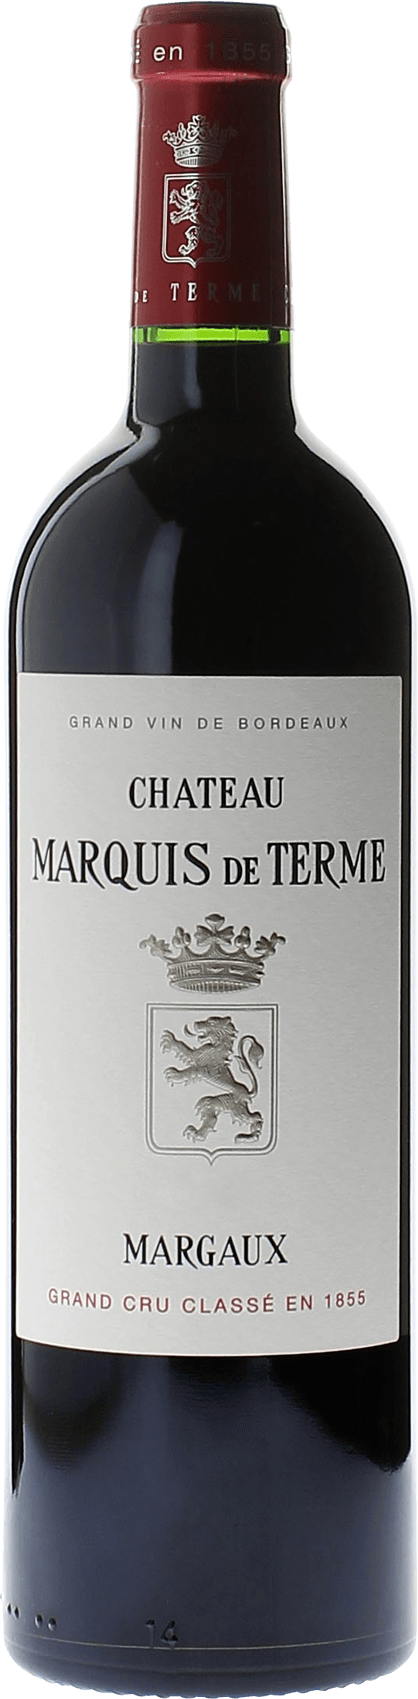 Marquis de terme 2020 4me Grand cru class Margaux, Bordeaux rouge